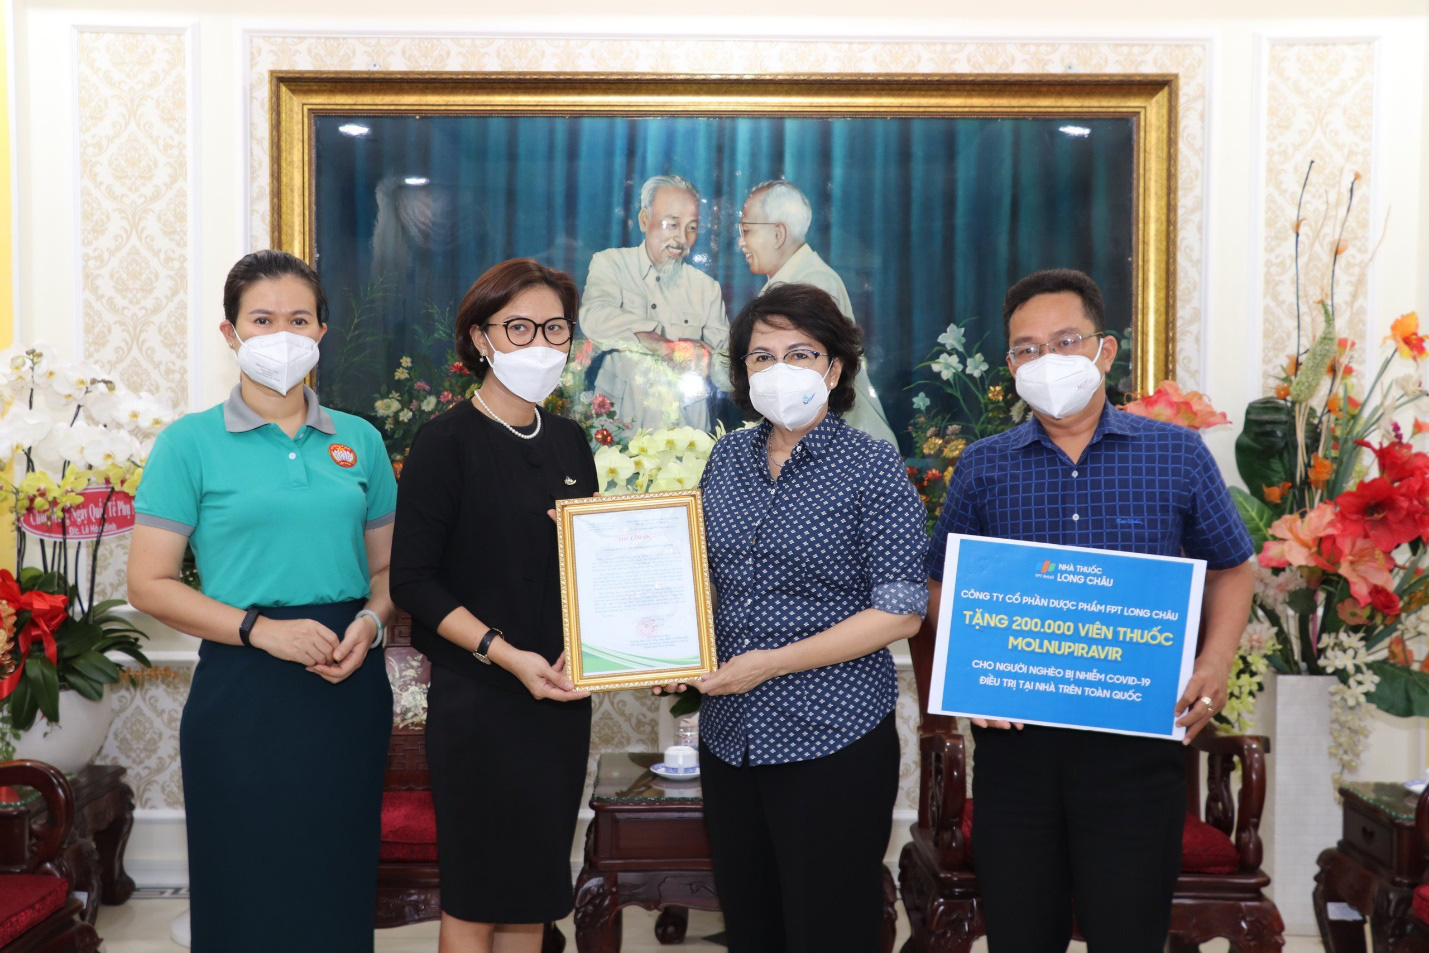 200.000 viên thuốc điều trị Covid sẽ được FPT Long Châu trao tặng miễn phí tới hộ nghèo - Ảnh 1.